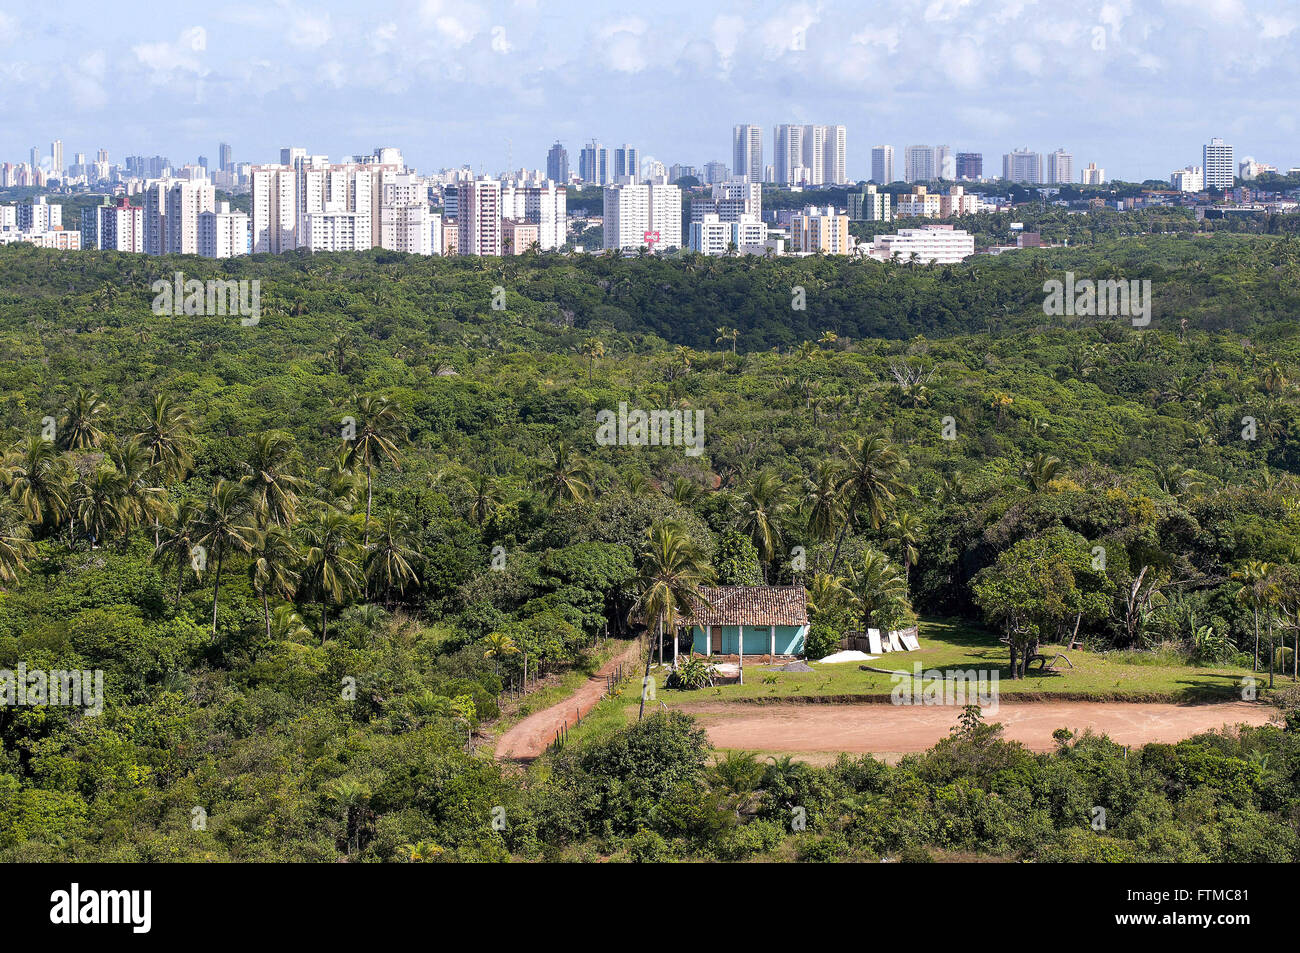 Vista de cima do Parque Metropolitano de Pituacu - bairro Pituacu Stock Photo